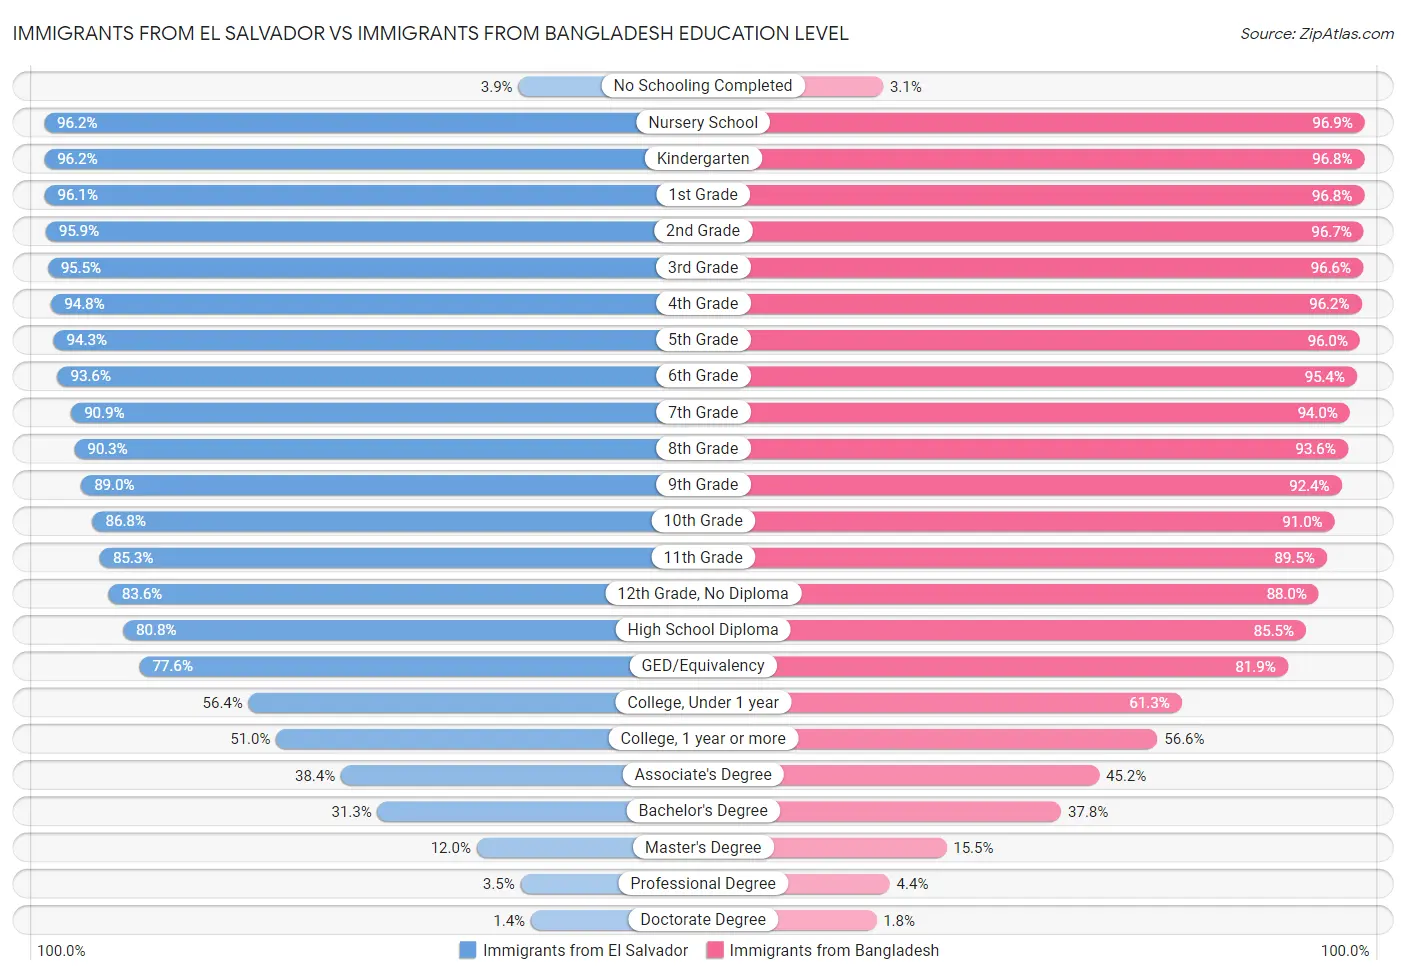 Immigrants from El Salvador vs Immigrants from Bangladesh Education Level